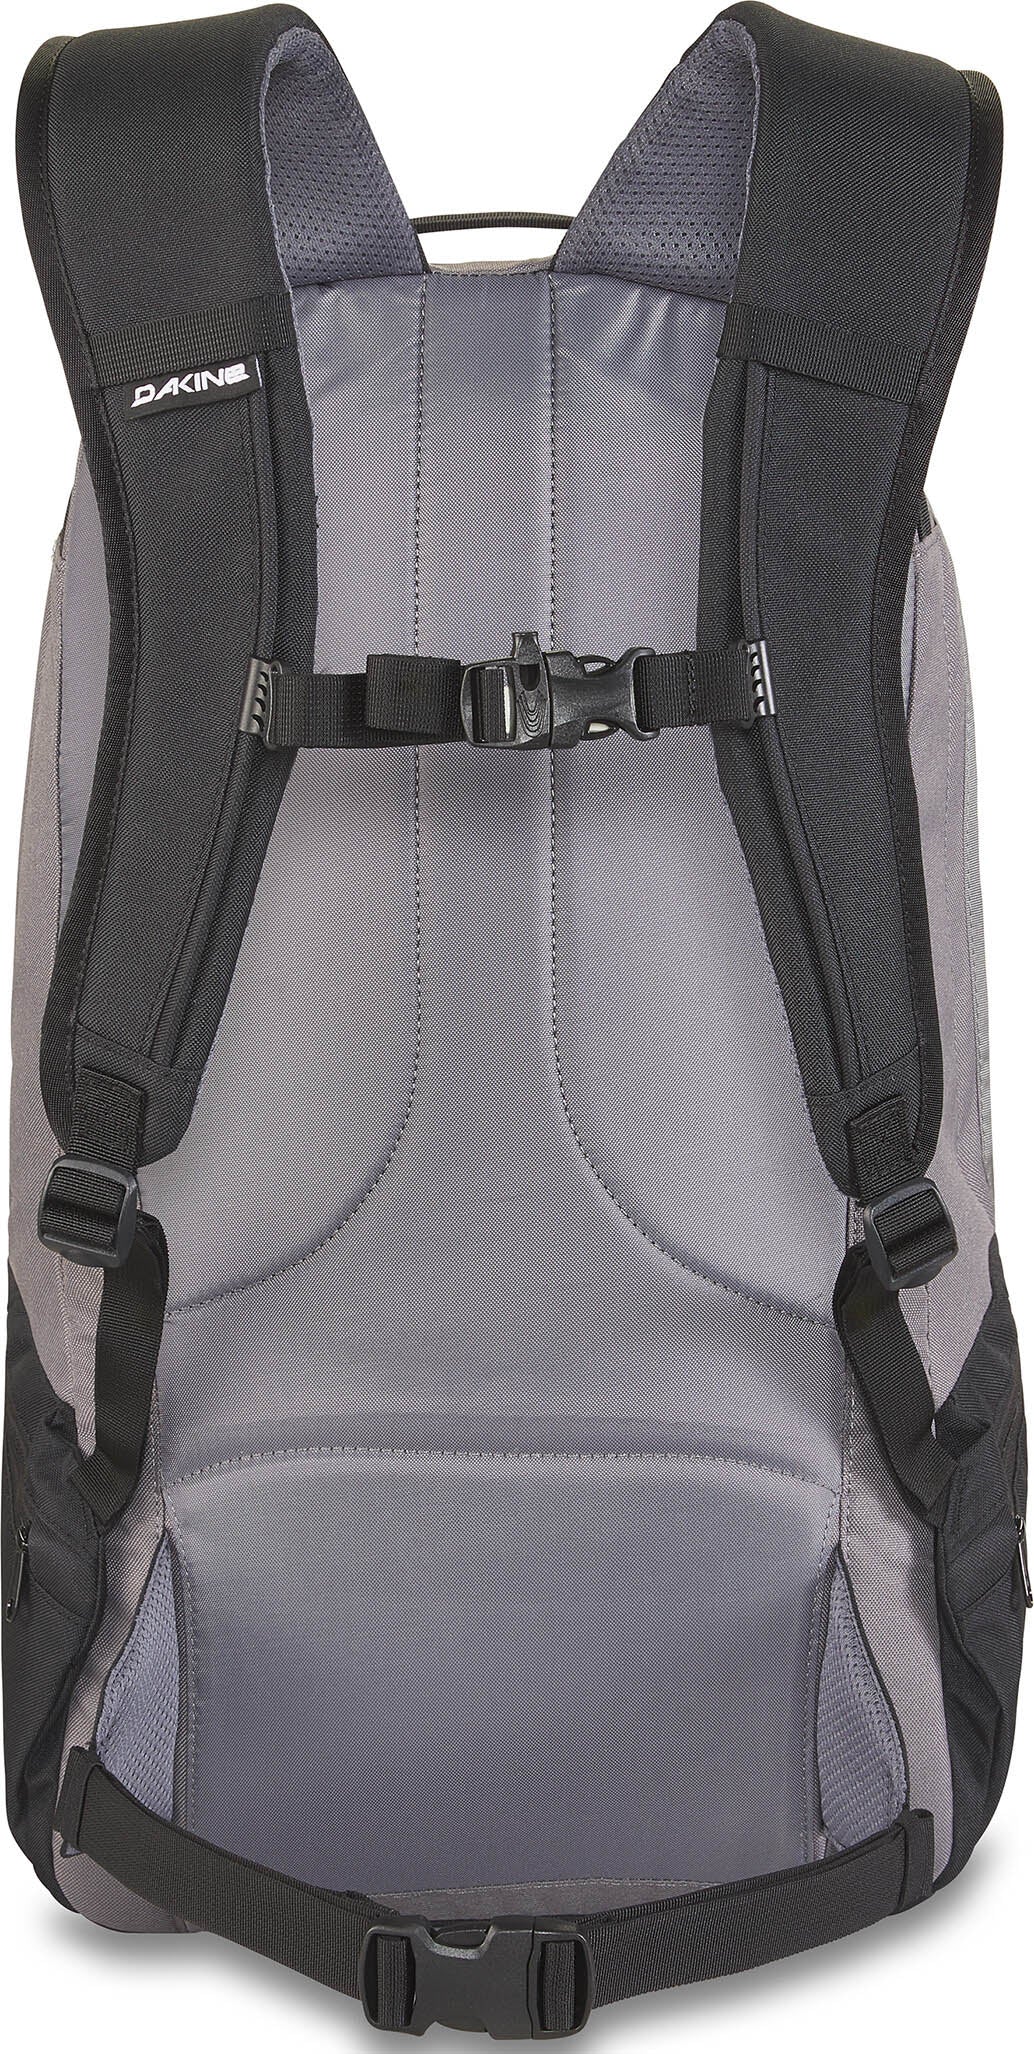 Dakine Mission 25L Backpack - Steel Grey